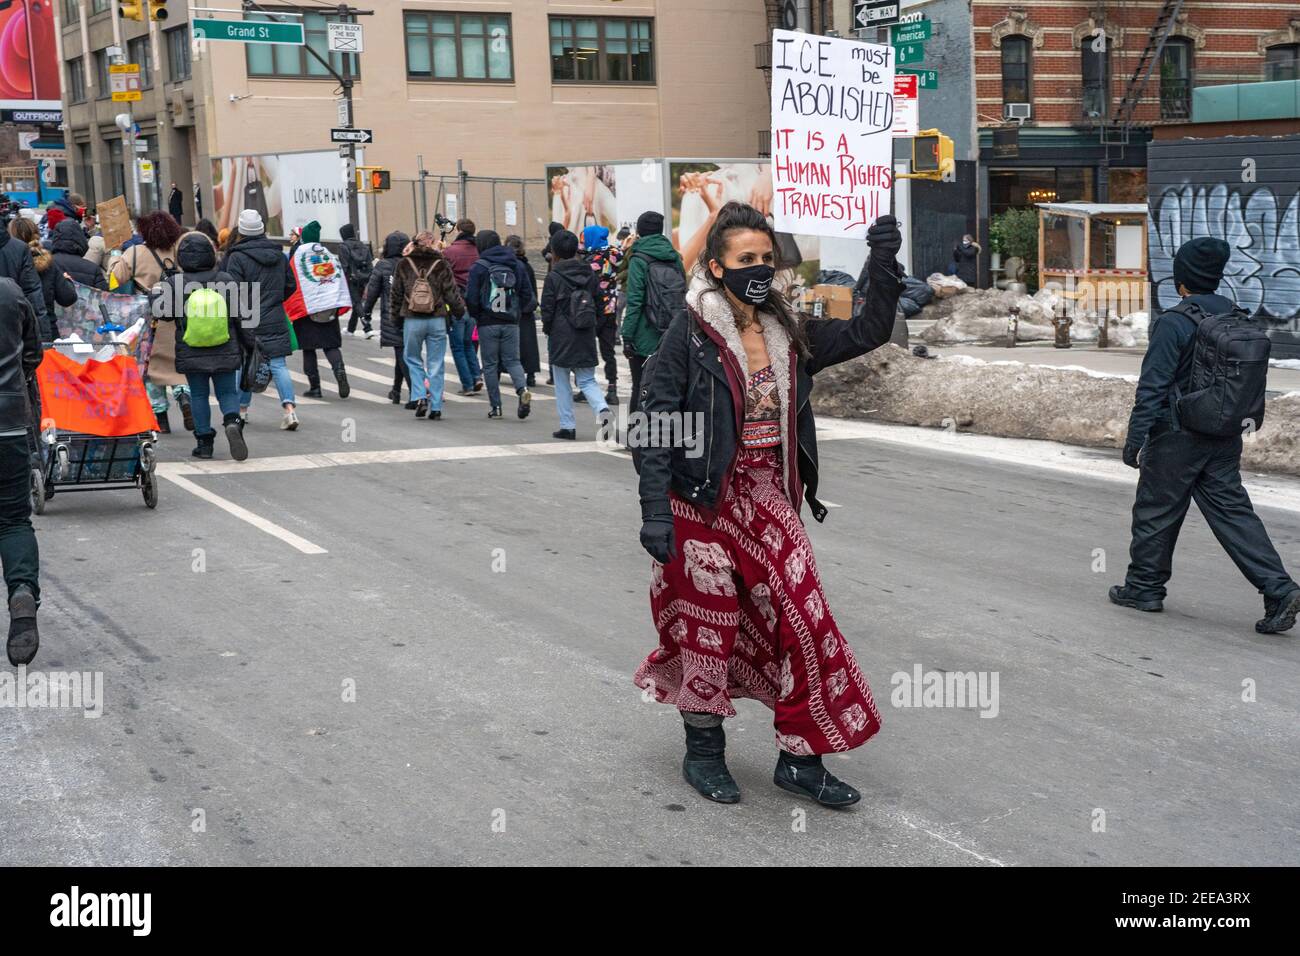 NEW YORK, NY - 15 FÉVRIER : un manifestant tient un panneau sur l'abolition DE LA GLACE lors d'une manifestation sur L'abolition DE LA GLACE (Immigration et application des douanes) le 15 février 2021 à New York. Libérez-les tous par la coalition Aboïte ICE a défilé pour Javier Castillo Maradiaga à travers le centre-ville de New York. M. Maradiaga, un Bronx de 27 ans qui vit aux États-Unis depuis son âge de 7 ans, devait être expulsé par l'Immigration and Customs Enforcement (ICE) des États-Unis. Banque D'Images